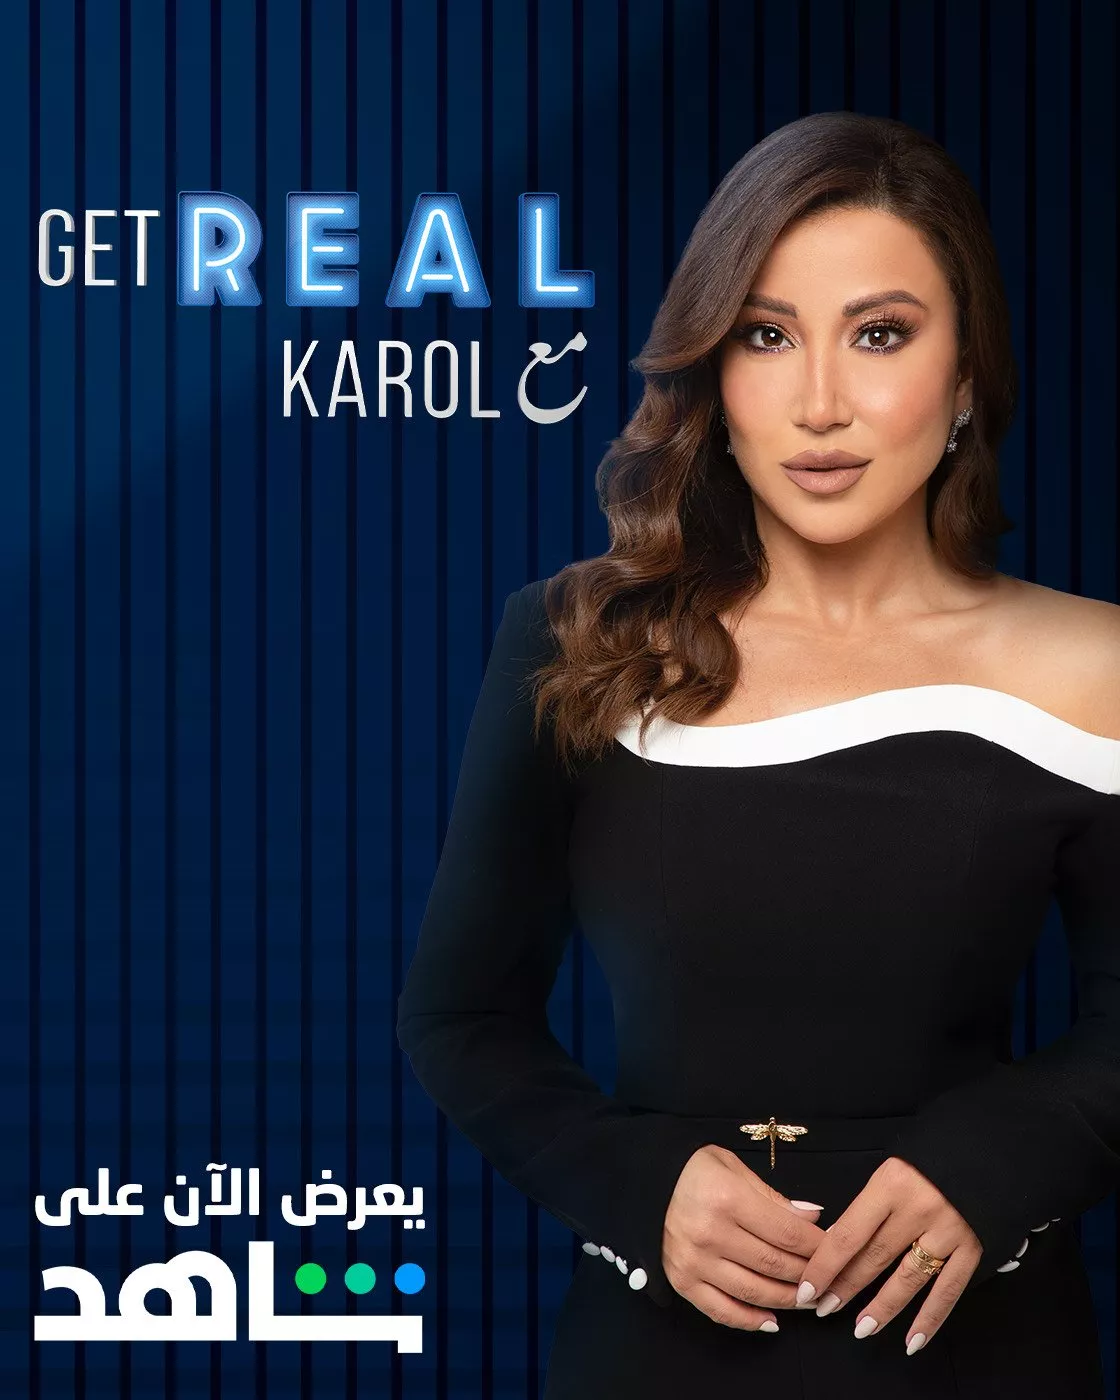 بعد يوتيوب، برنامج Get Real مع Karol يُعرض على منصة شاهد